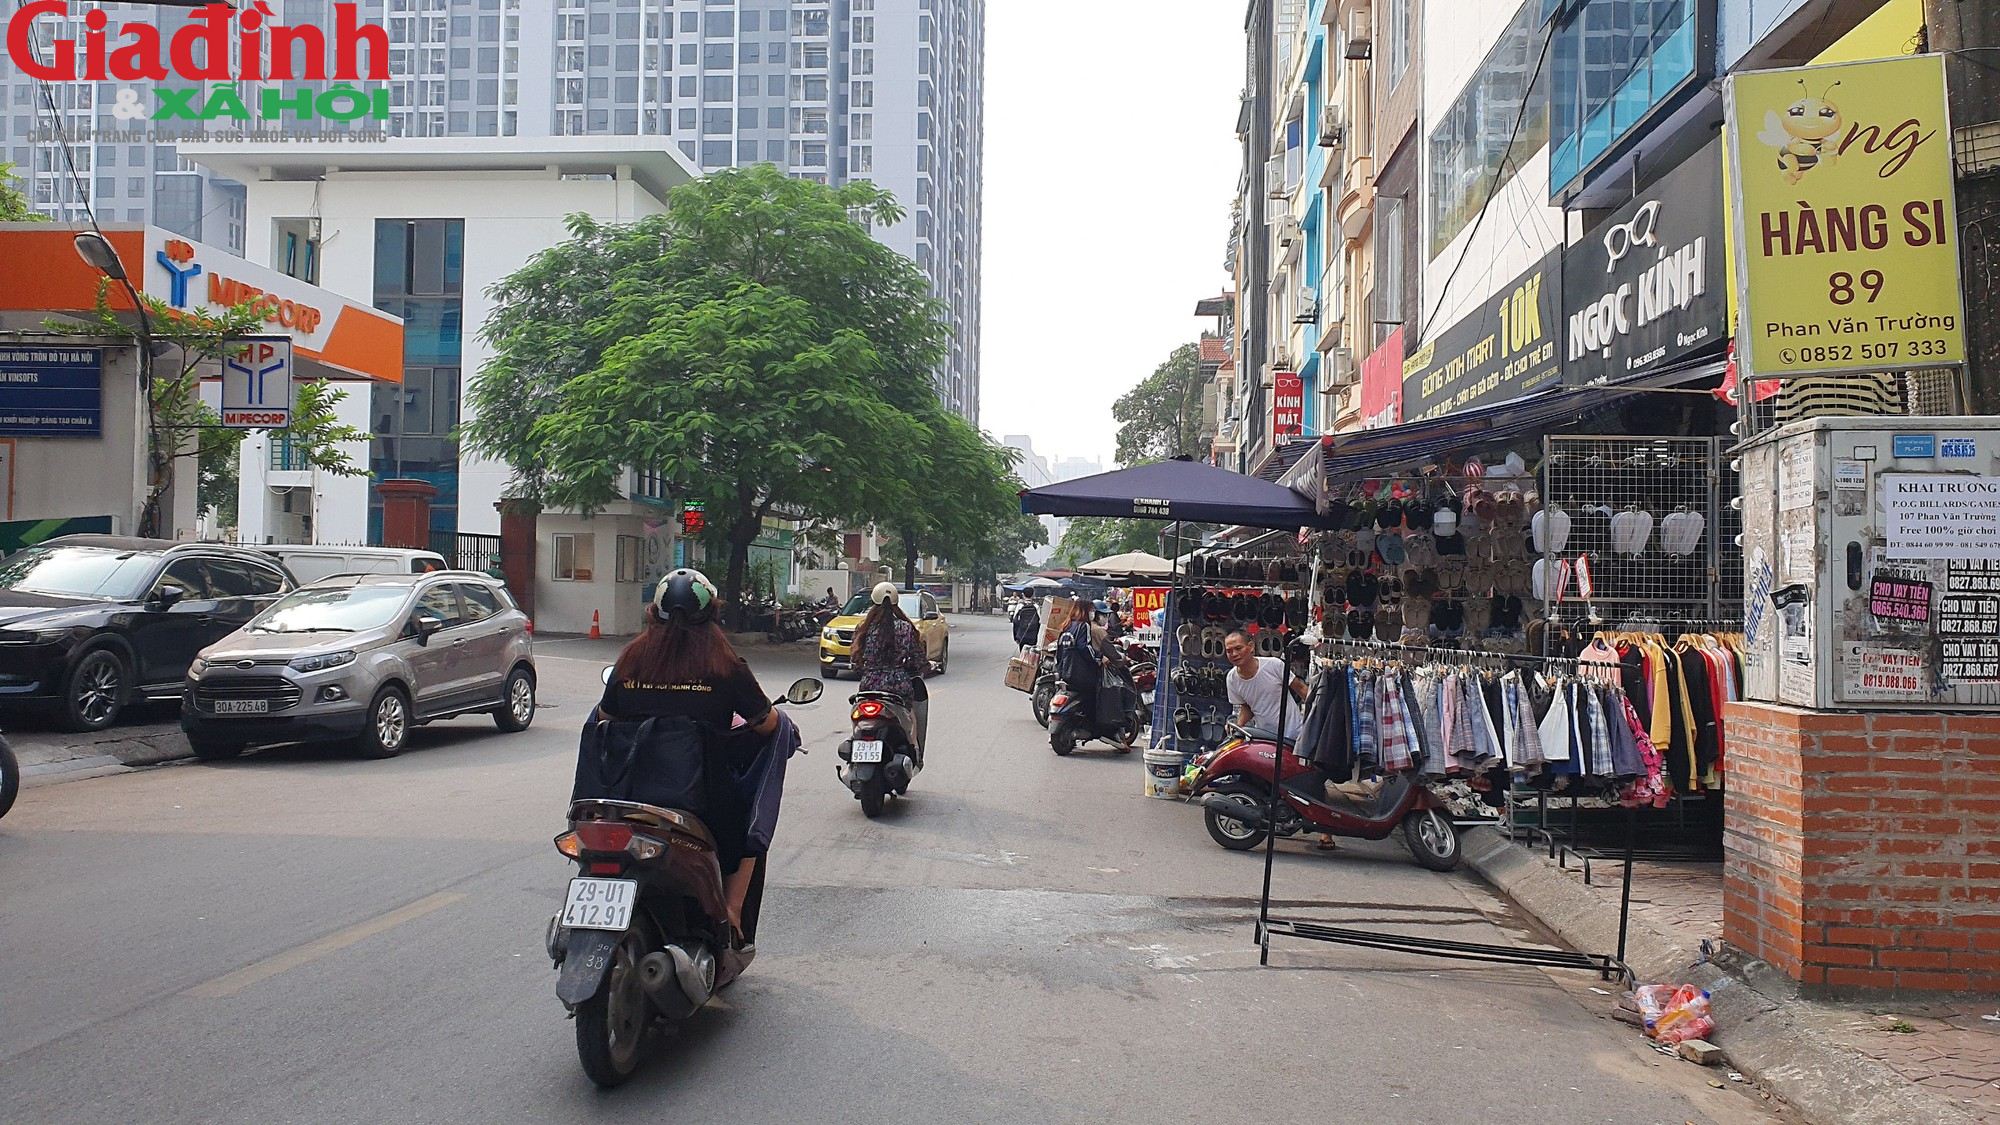 Hà Nội: Đường Phan Văn Trường đang bị chiếm dụng bởi ‘thiên đường mua sắm’ giới trẻ  - Ảnh 2.